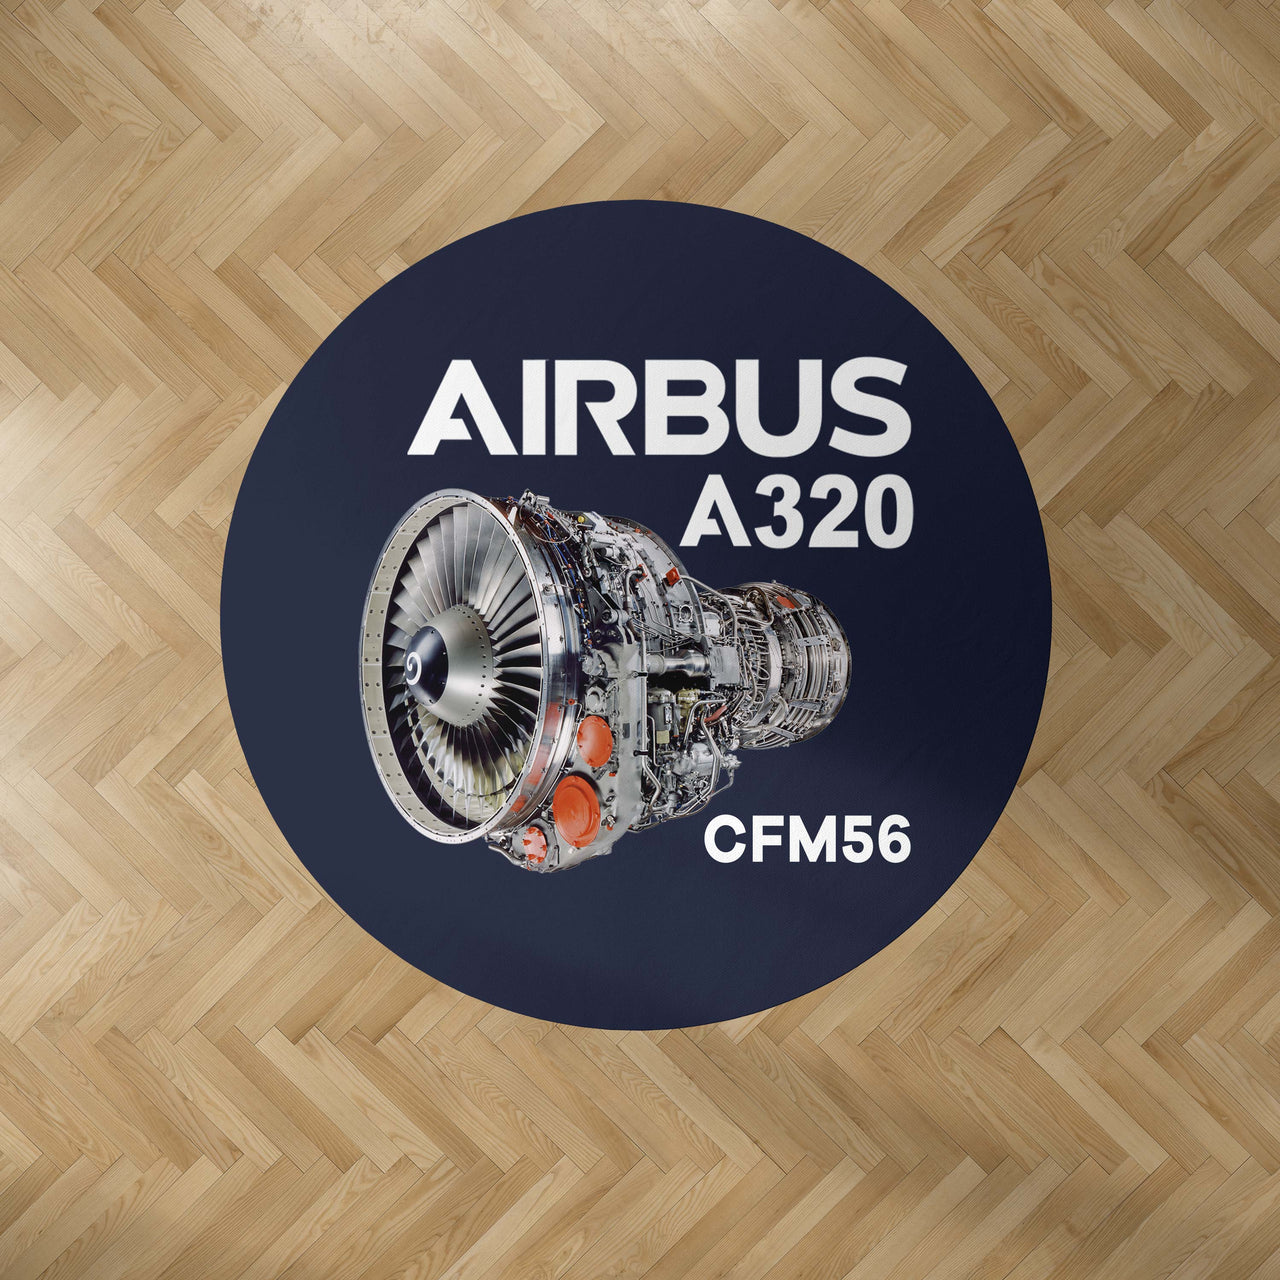 Airbus A320 & CFM56 Engine.png Designed Carpet & Floor Mats (Round)